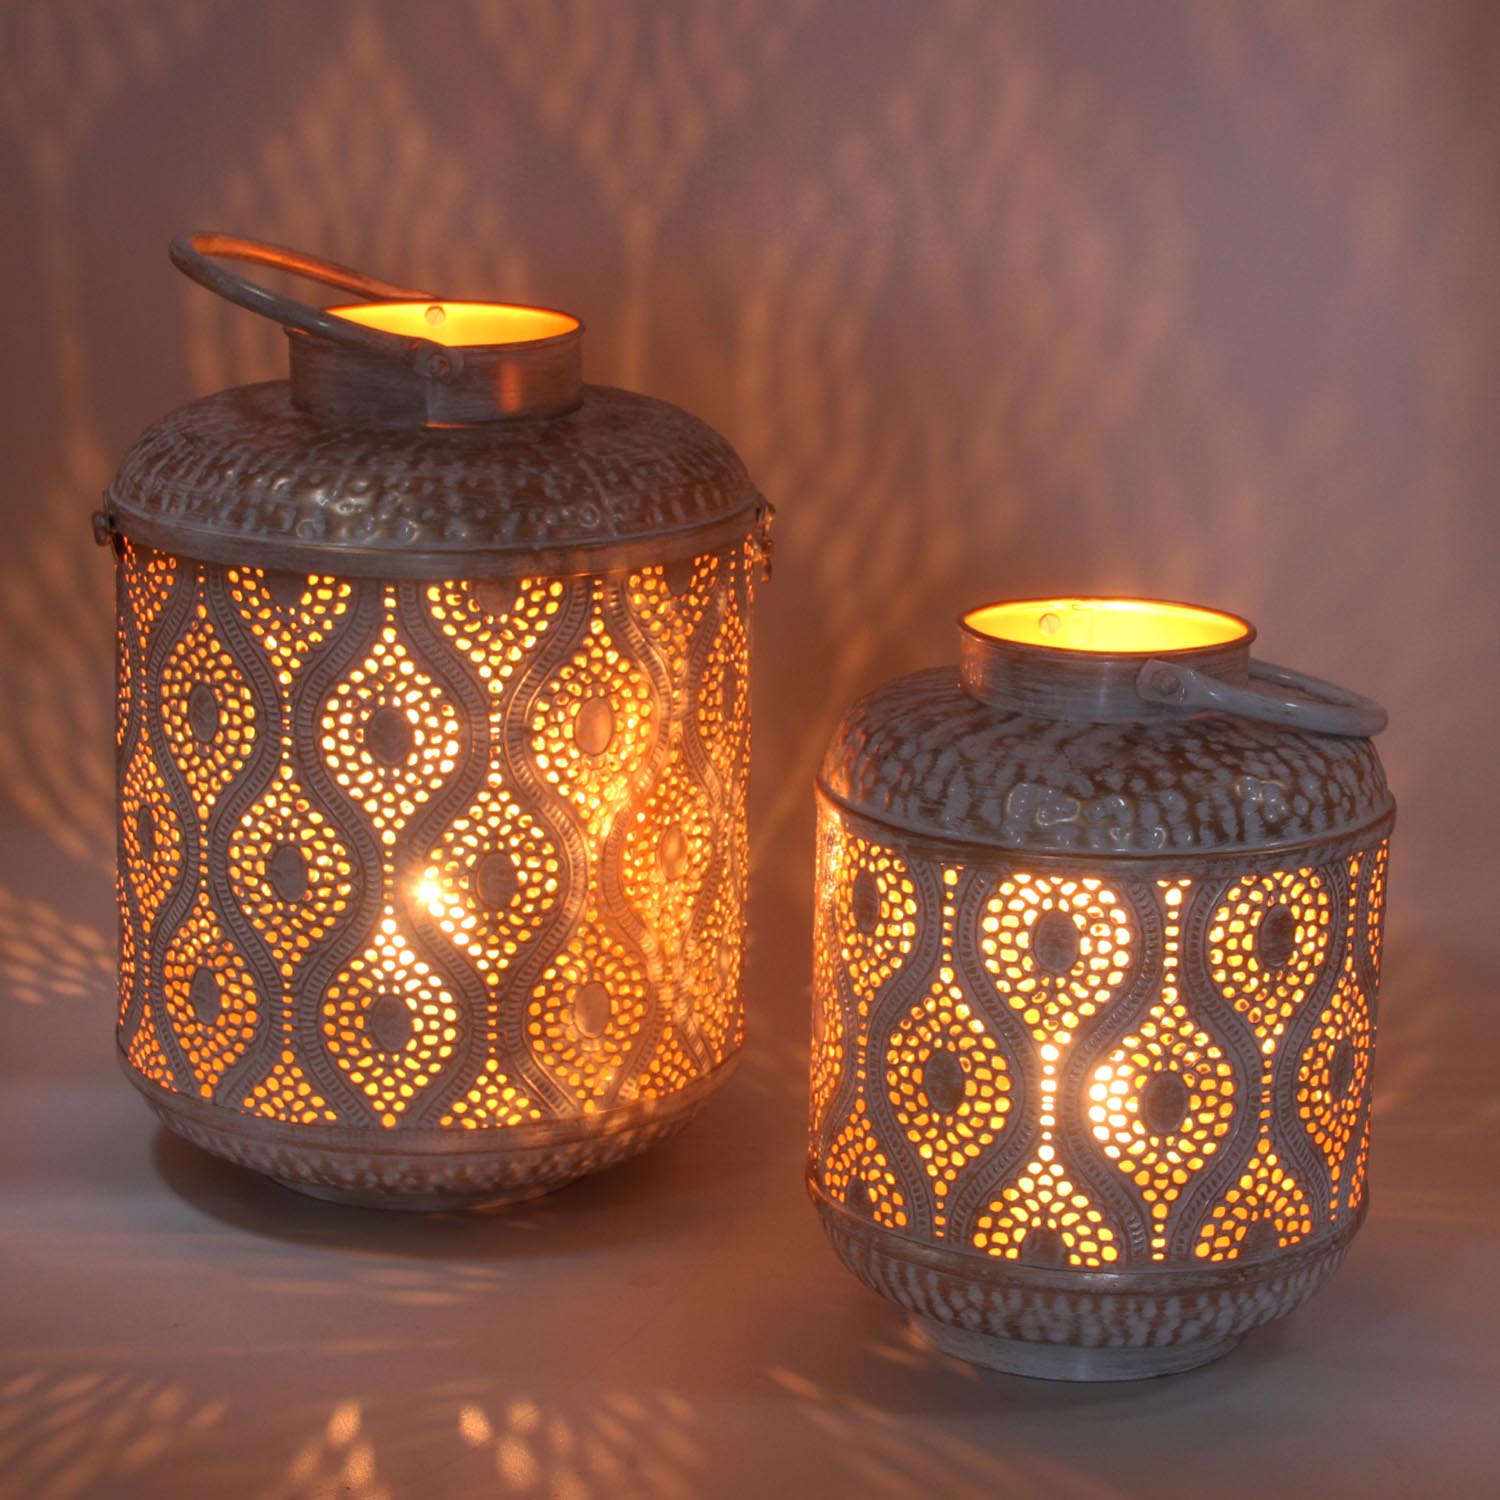 Casa Moro Marokkanische Windlichter 3er Set Navin aus Metall in Antik-Gold Look 3 runde Kerzenhalter Orientalische Teelichthalter wie aus 1001 Nacht WLS505